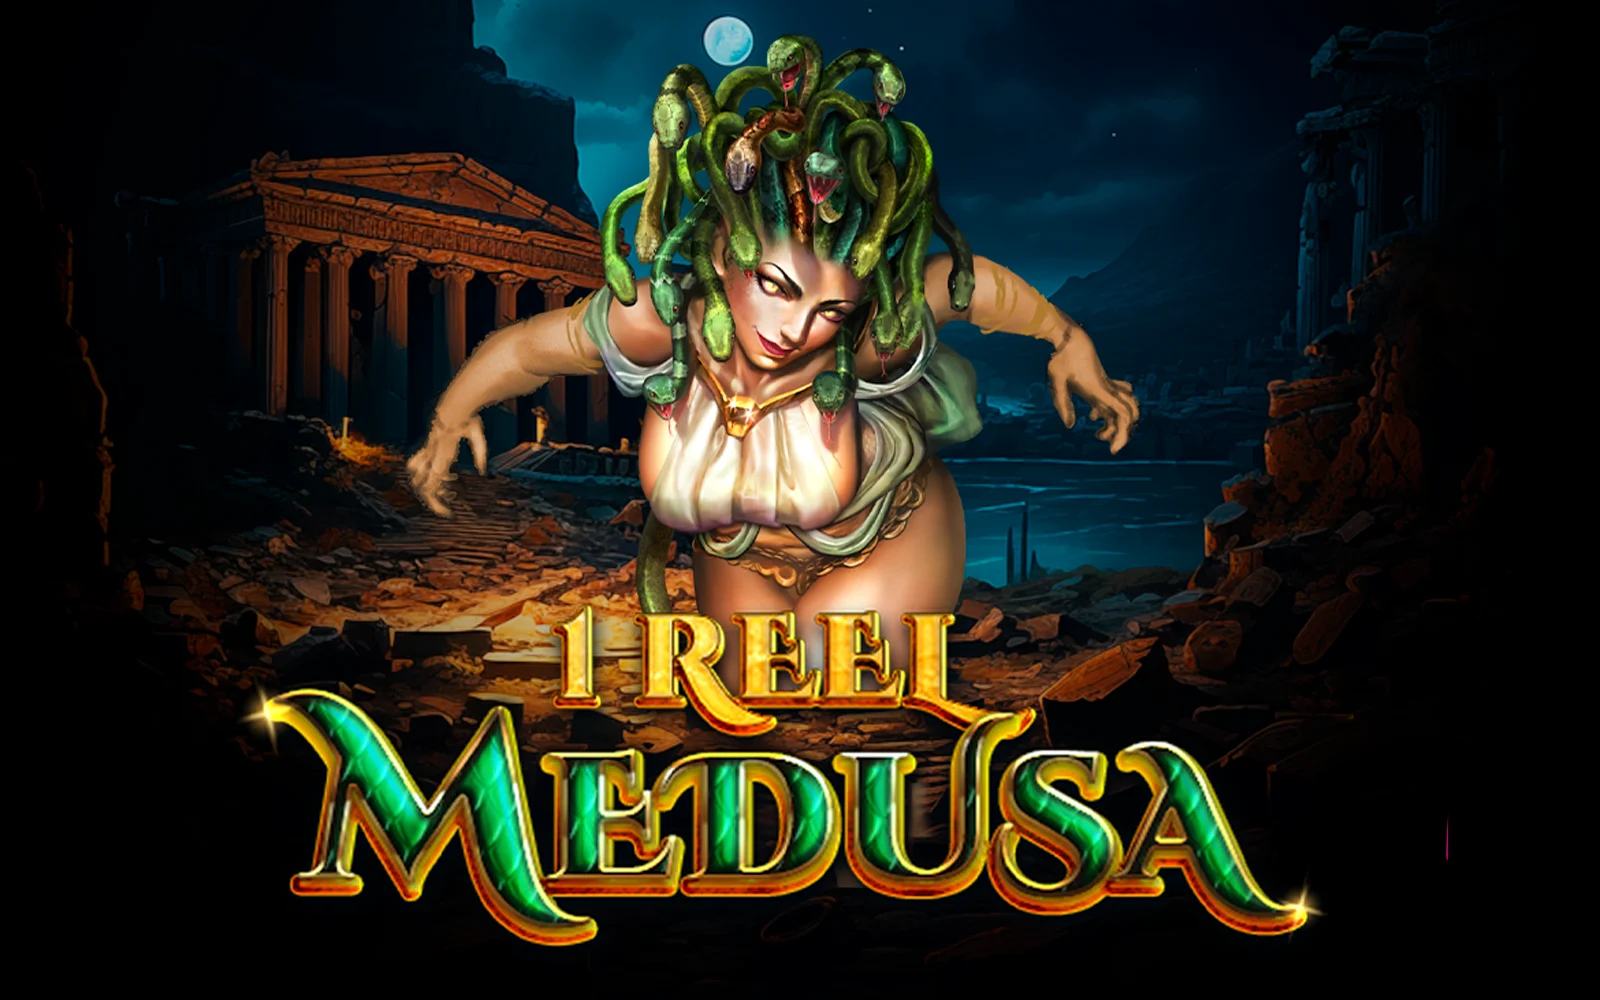 Spielen Sie 1 Reel - Medusa™ auf Starcasino.be-Online-Casino